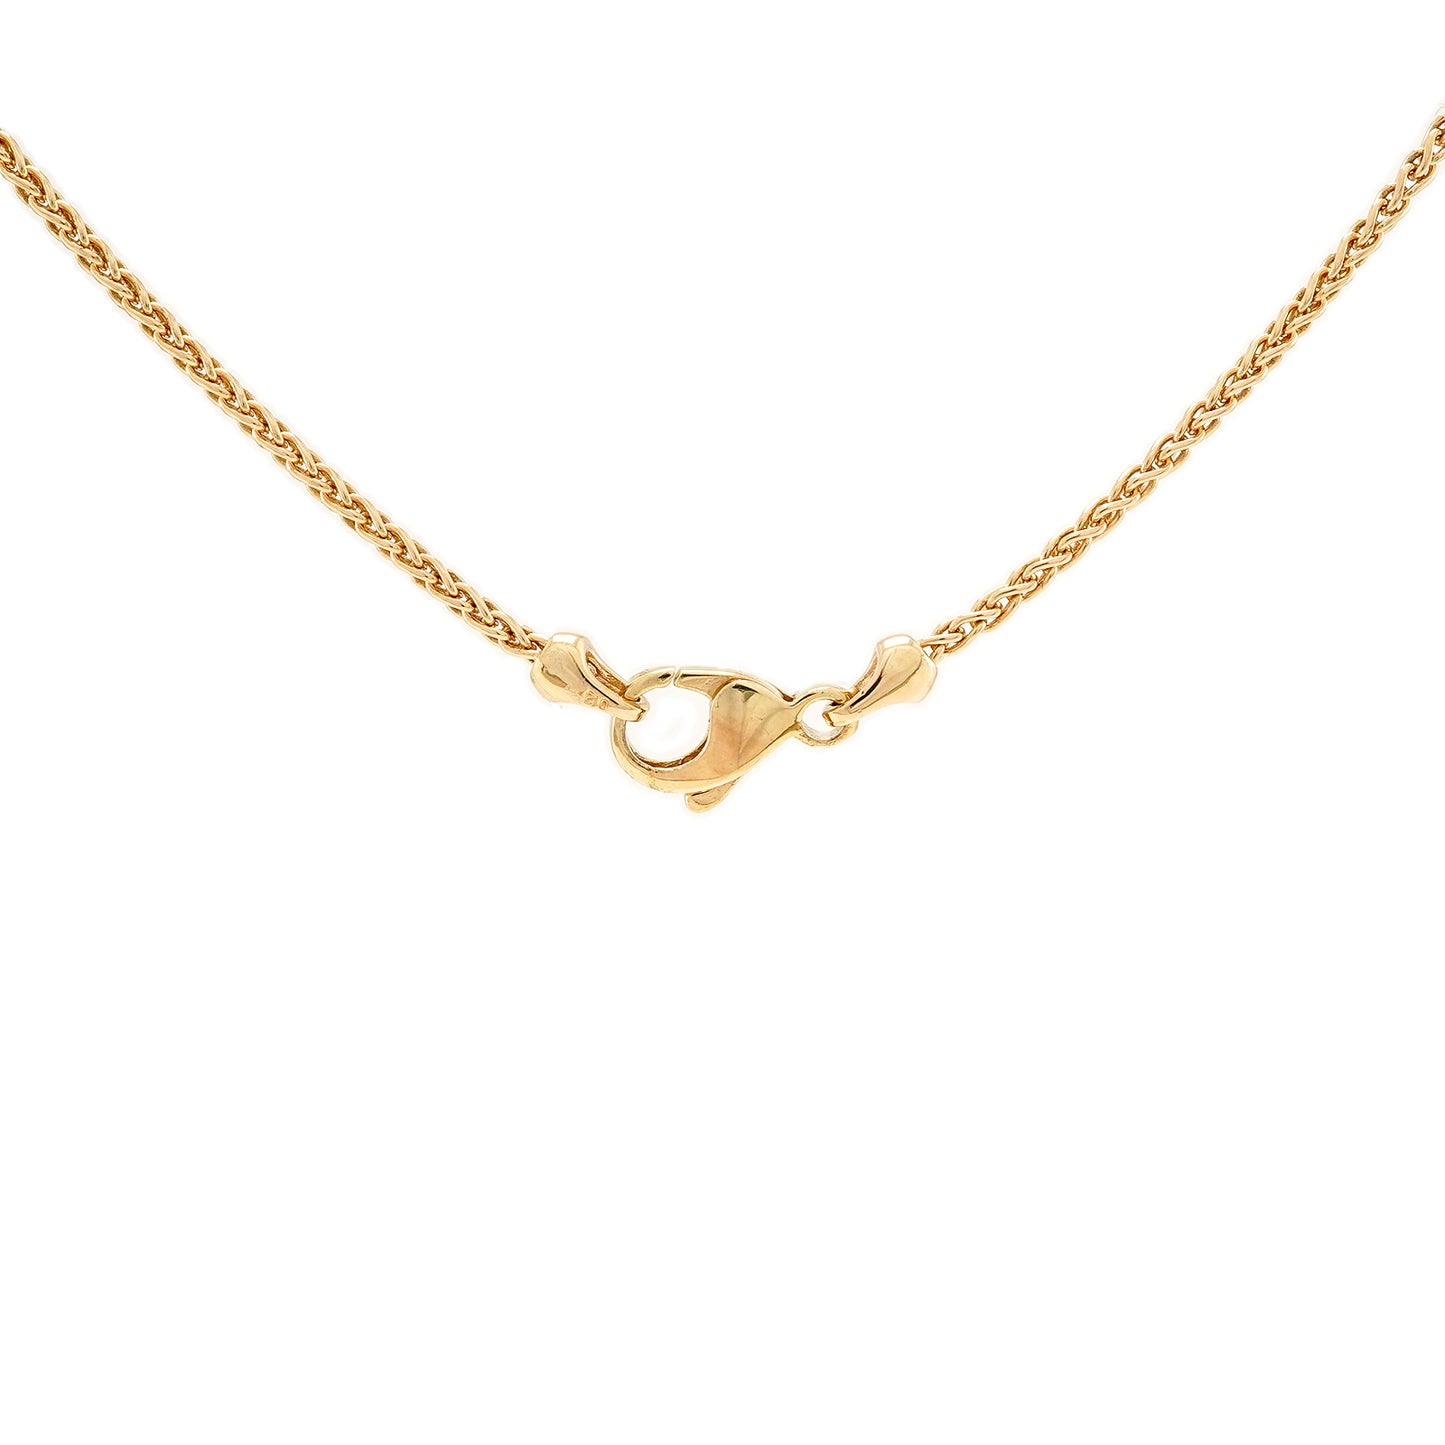 Vintage Diamantcollier Gelbgold 14K Damenschmuck Goldkette diamond necklace